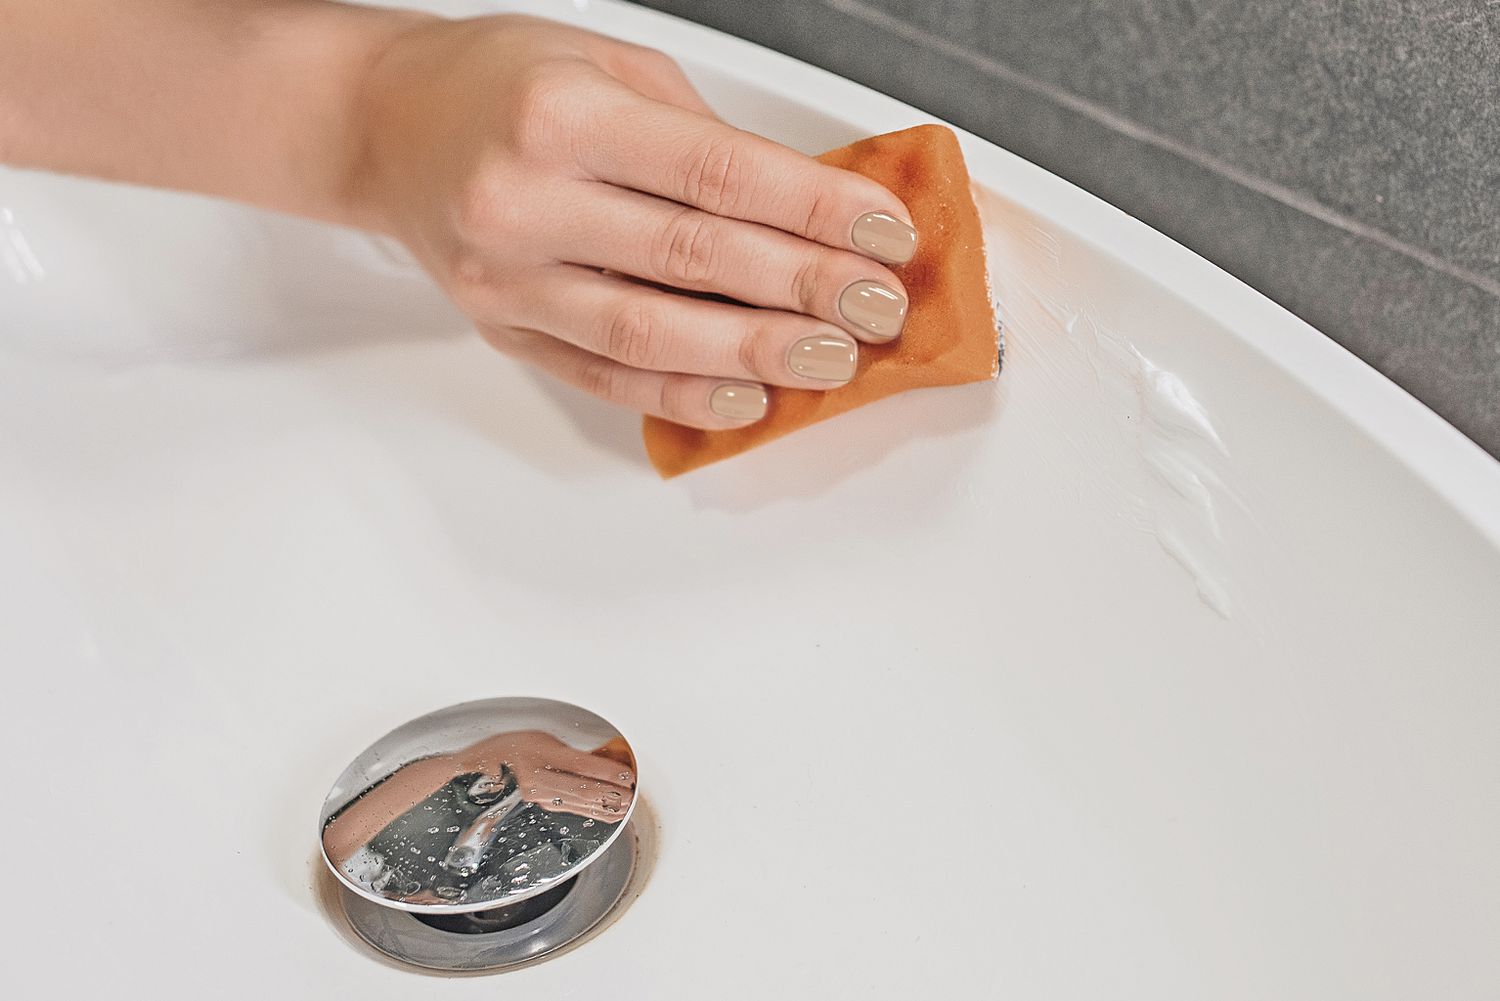 Zahnpasta zum Reinigen eines Waschbeckens verwenden